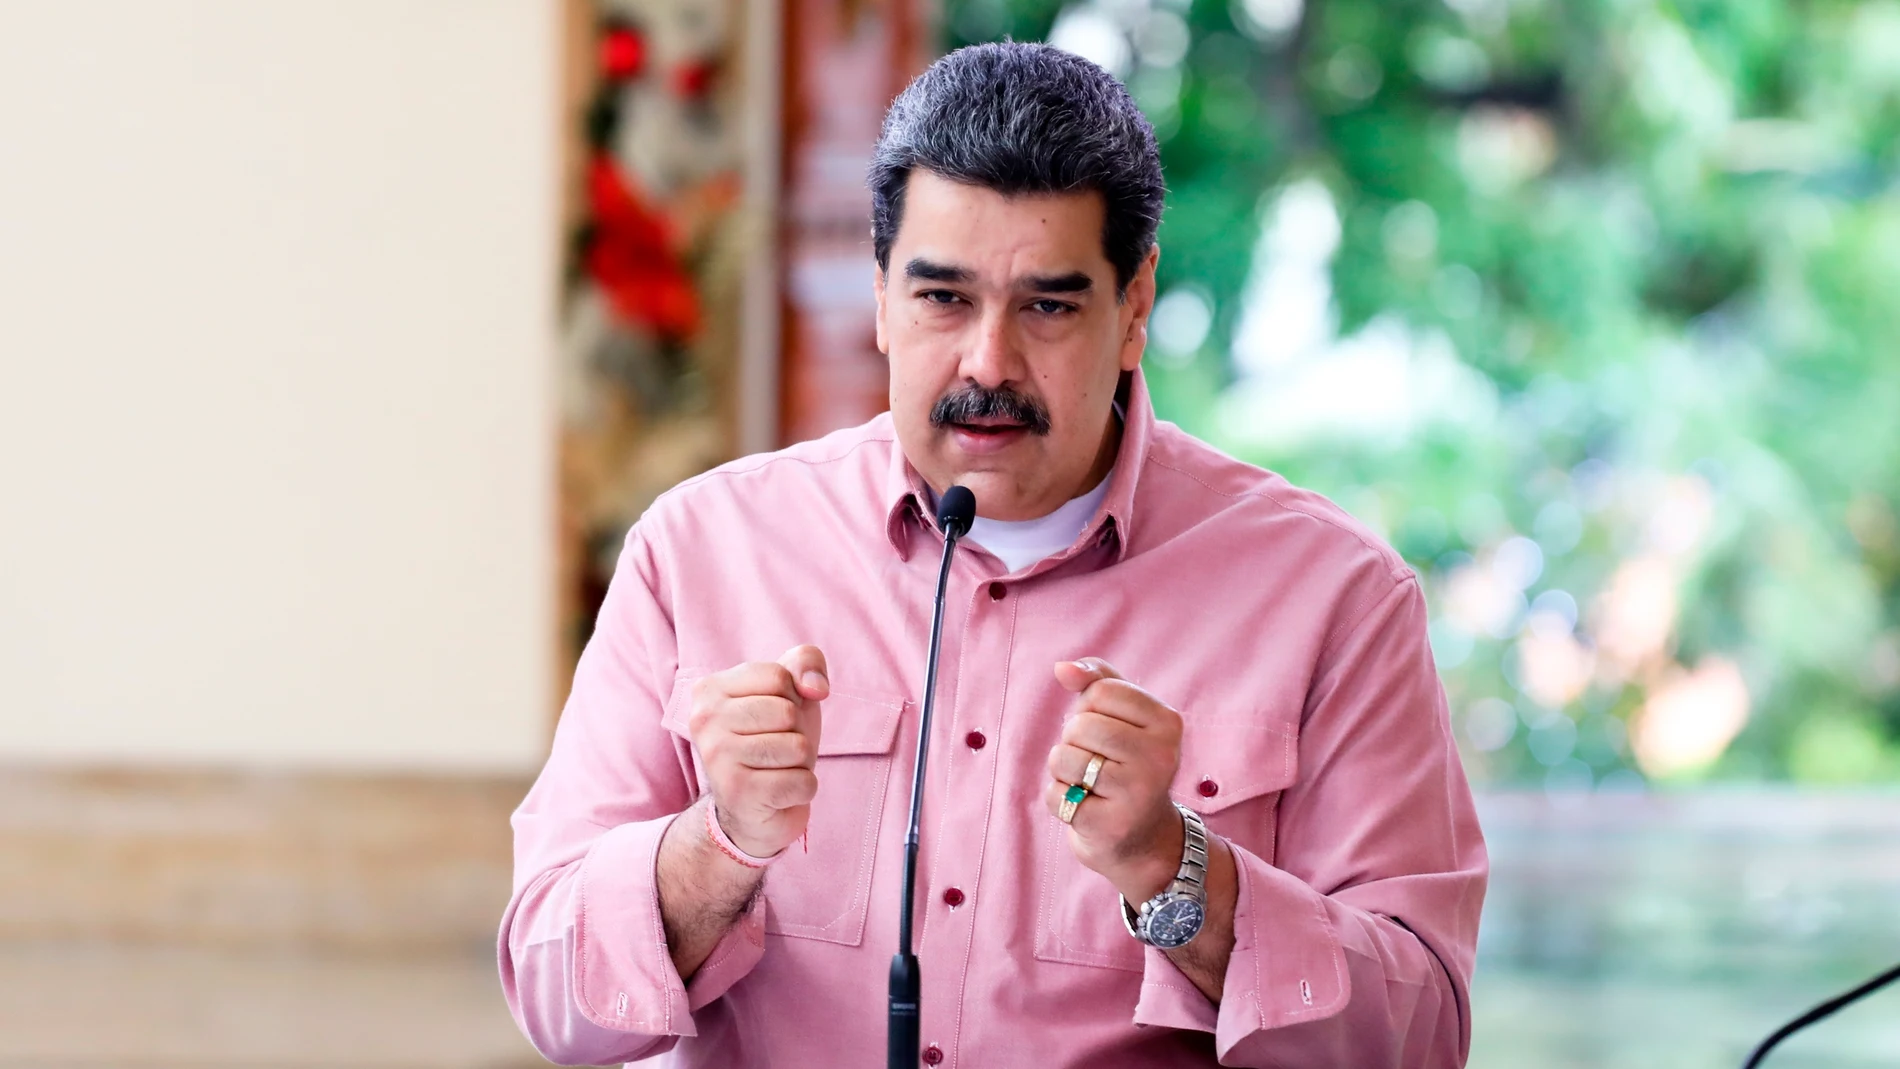 Fotografía cedida por prensa de Miraflores del presidente venezolano, Nicolás Maduro, en una transmisión de televisión hoy, domingo 17 de octubre del 2021, en Caracas (Venezuela).